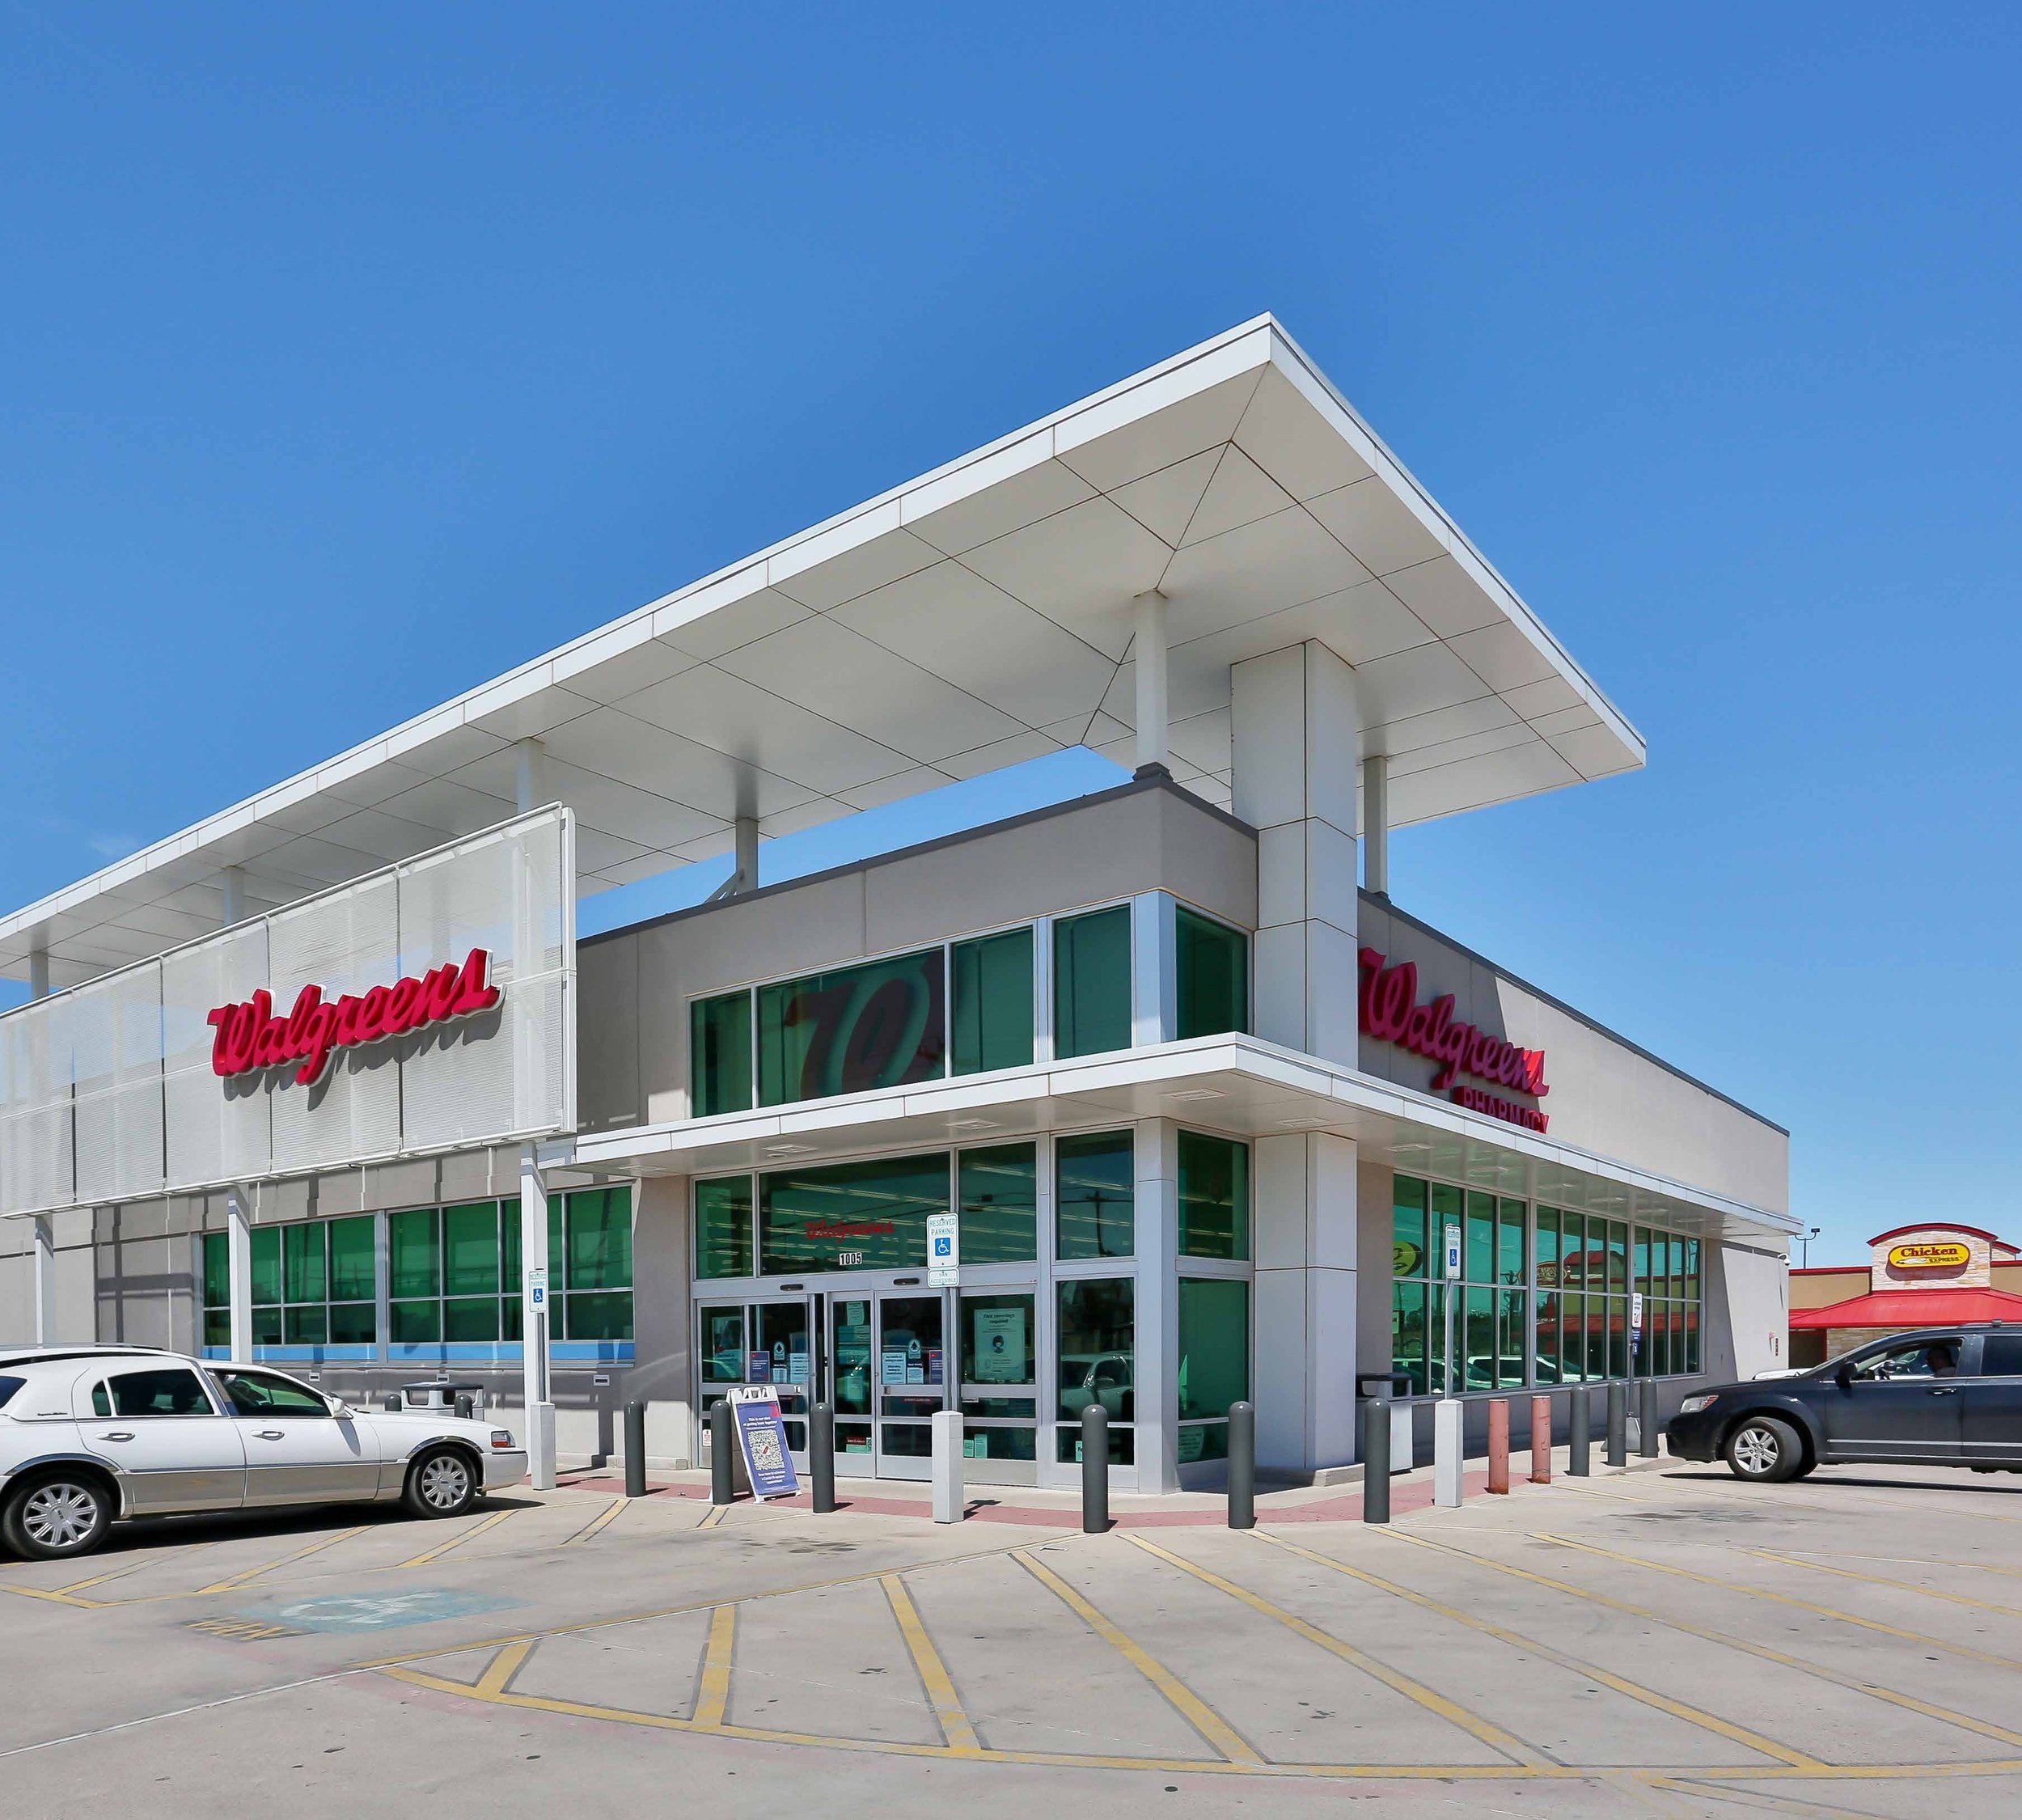 Walgreens - Abilene TX V4.jpg